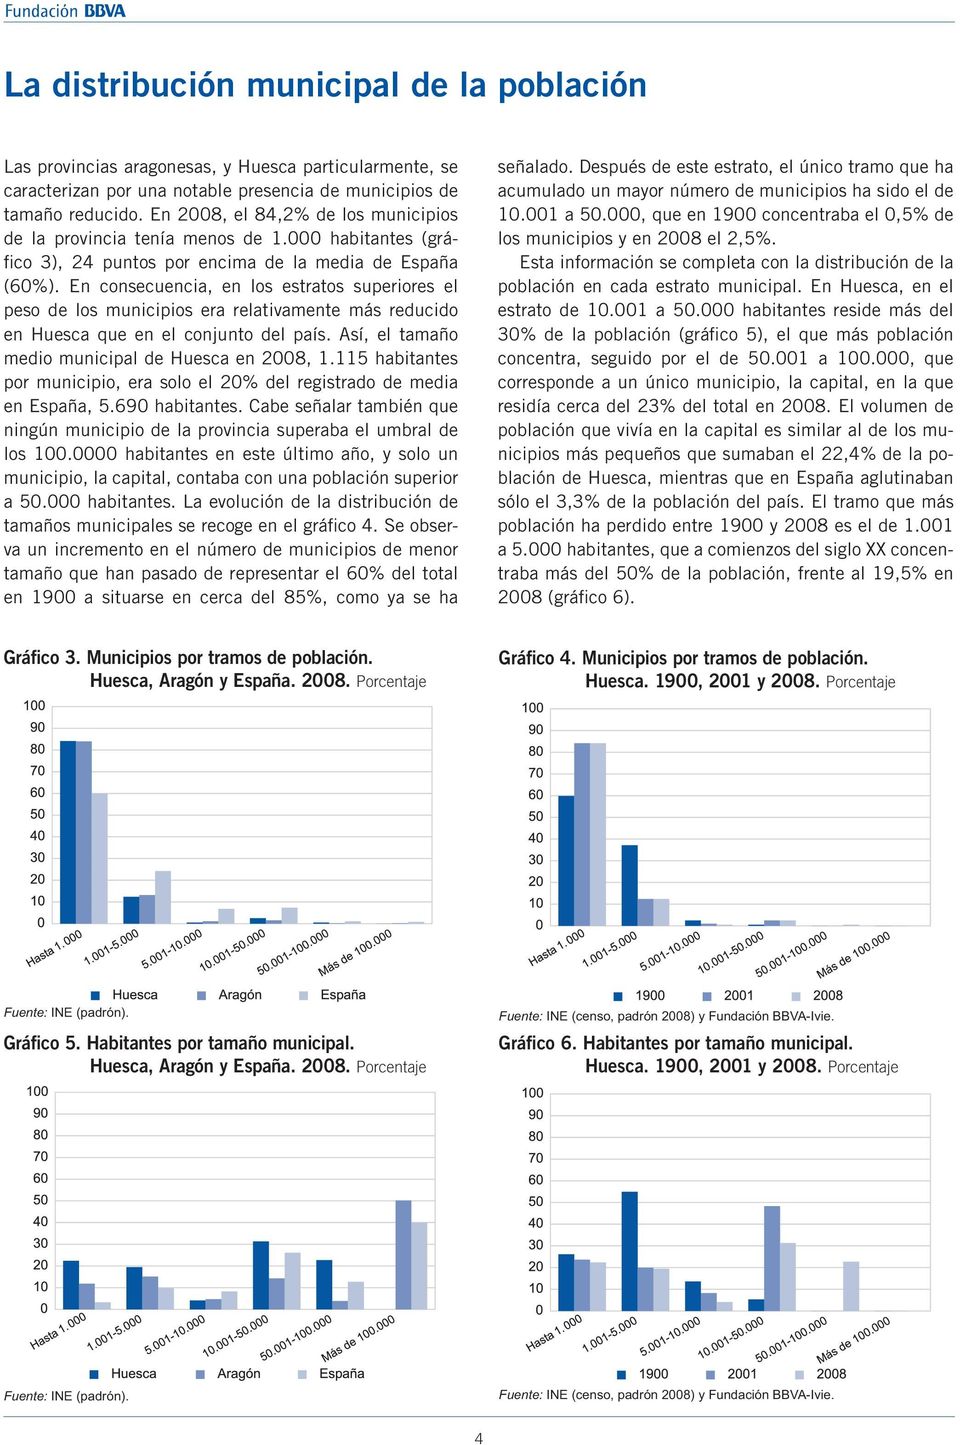 En consecuencia, en los estratos superiores el peso de los municipios era relativamente más reducido en Huesca que en el conjunto del país. Así, el tamaño medio municipal de Huesca en 2008, 1.